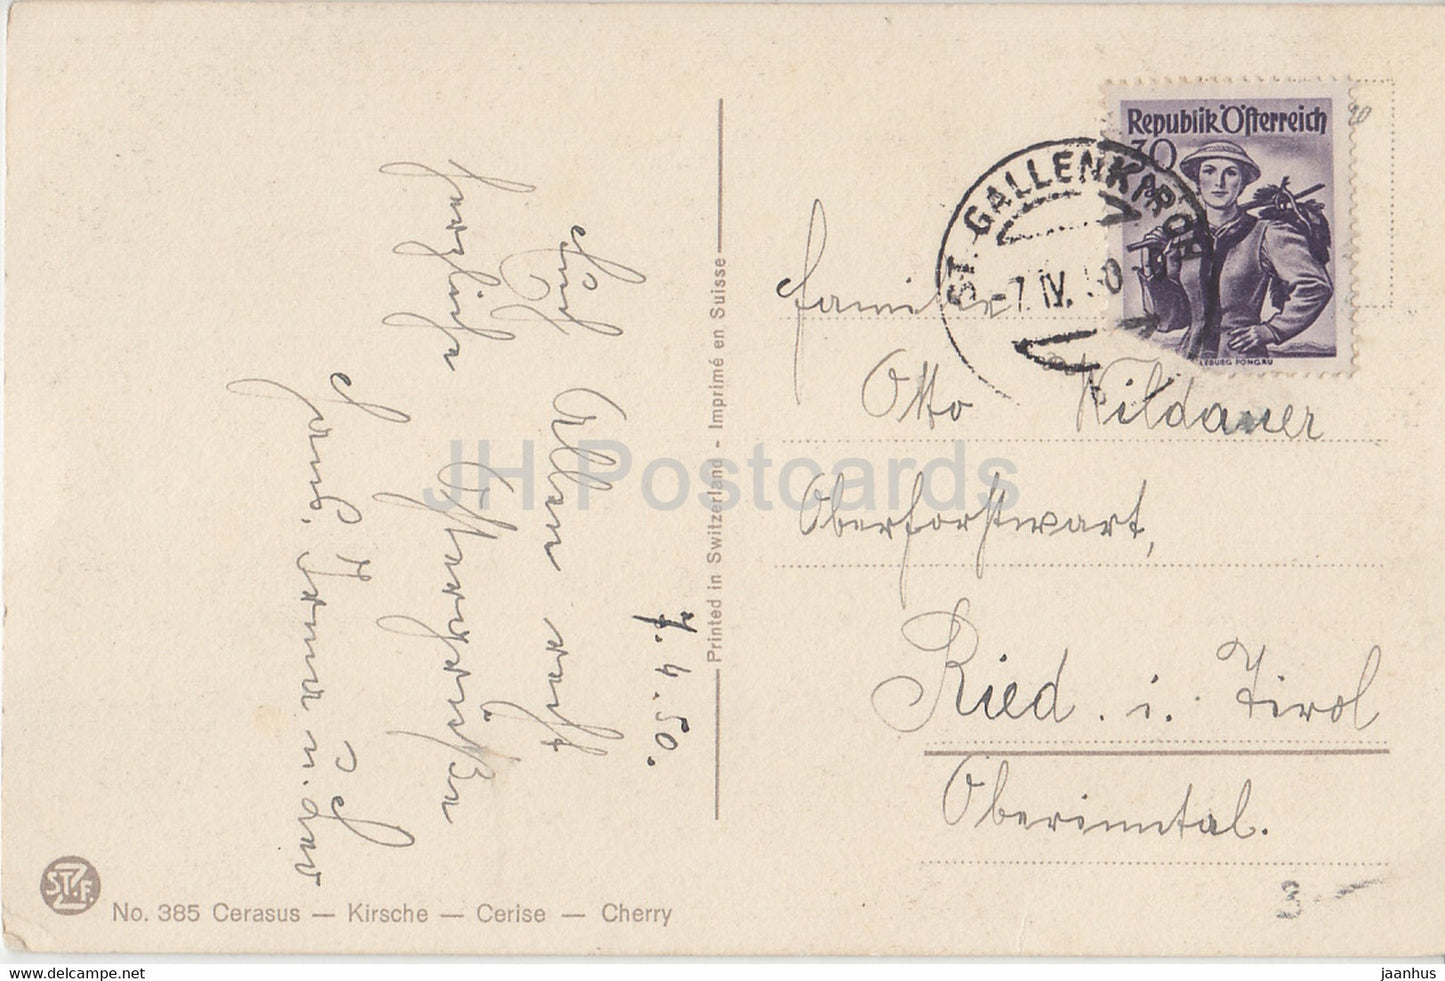 Cerasus - Kirsche - Kirsche - 385 - alte Postkarte - 1950 - Schweiz - gebraucht